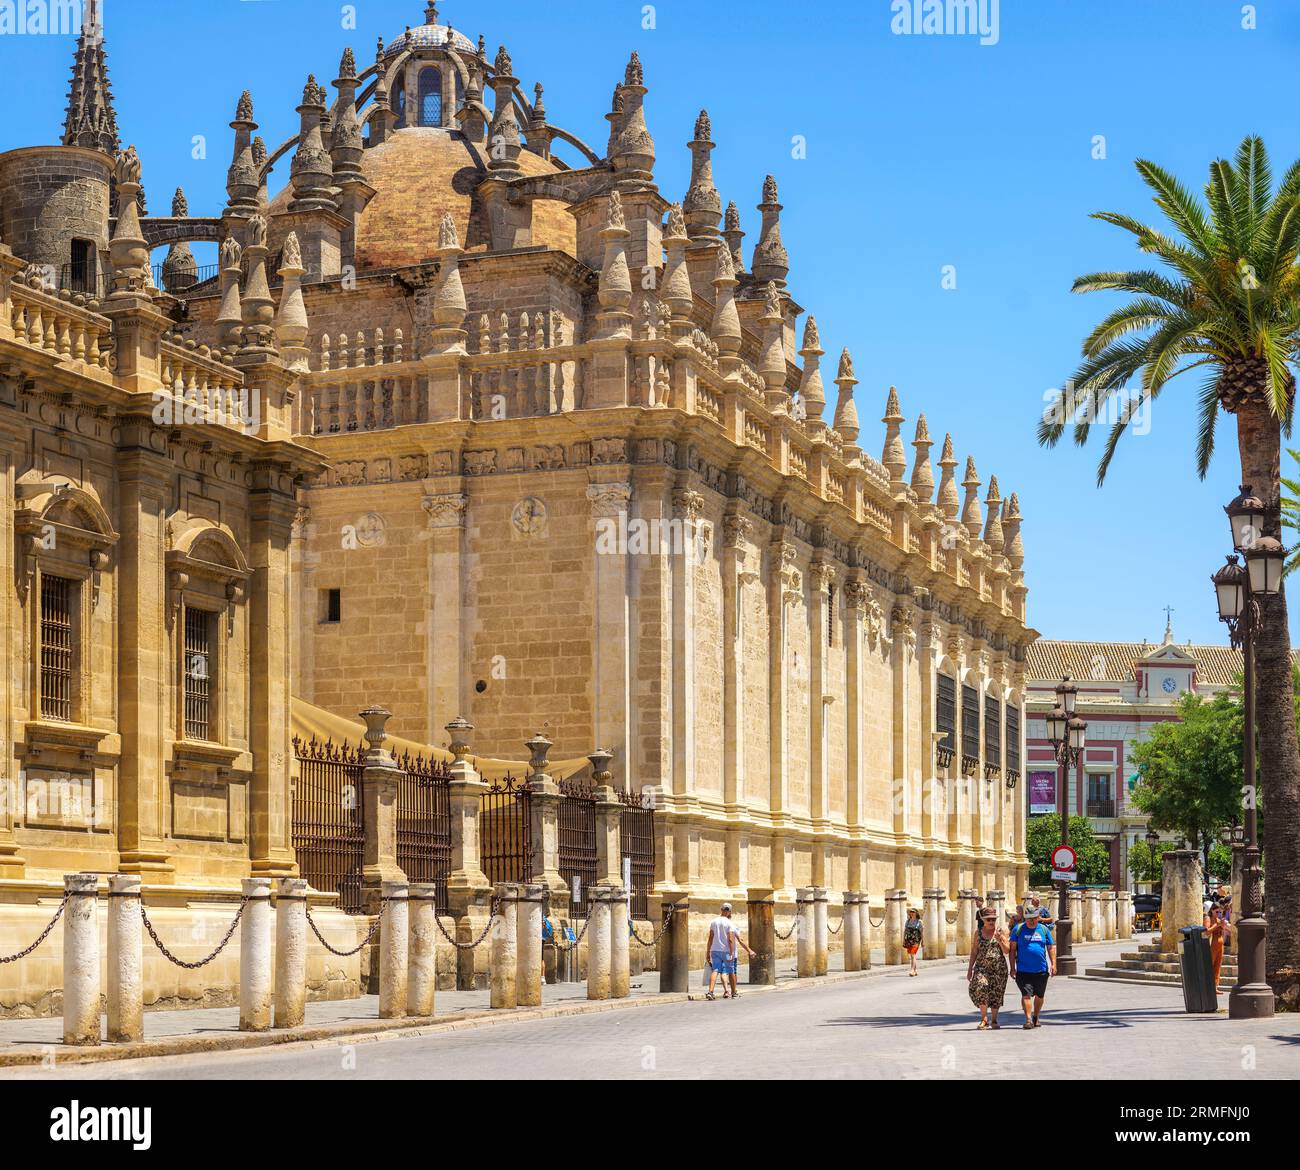 Südfassade der Kathedrale von Sevilla; Blick von der nordwestlichen Ecke des Archivo General de Indias-Gebäudes. Sevilla, Andalusien, Spanien. Stockfoto